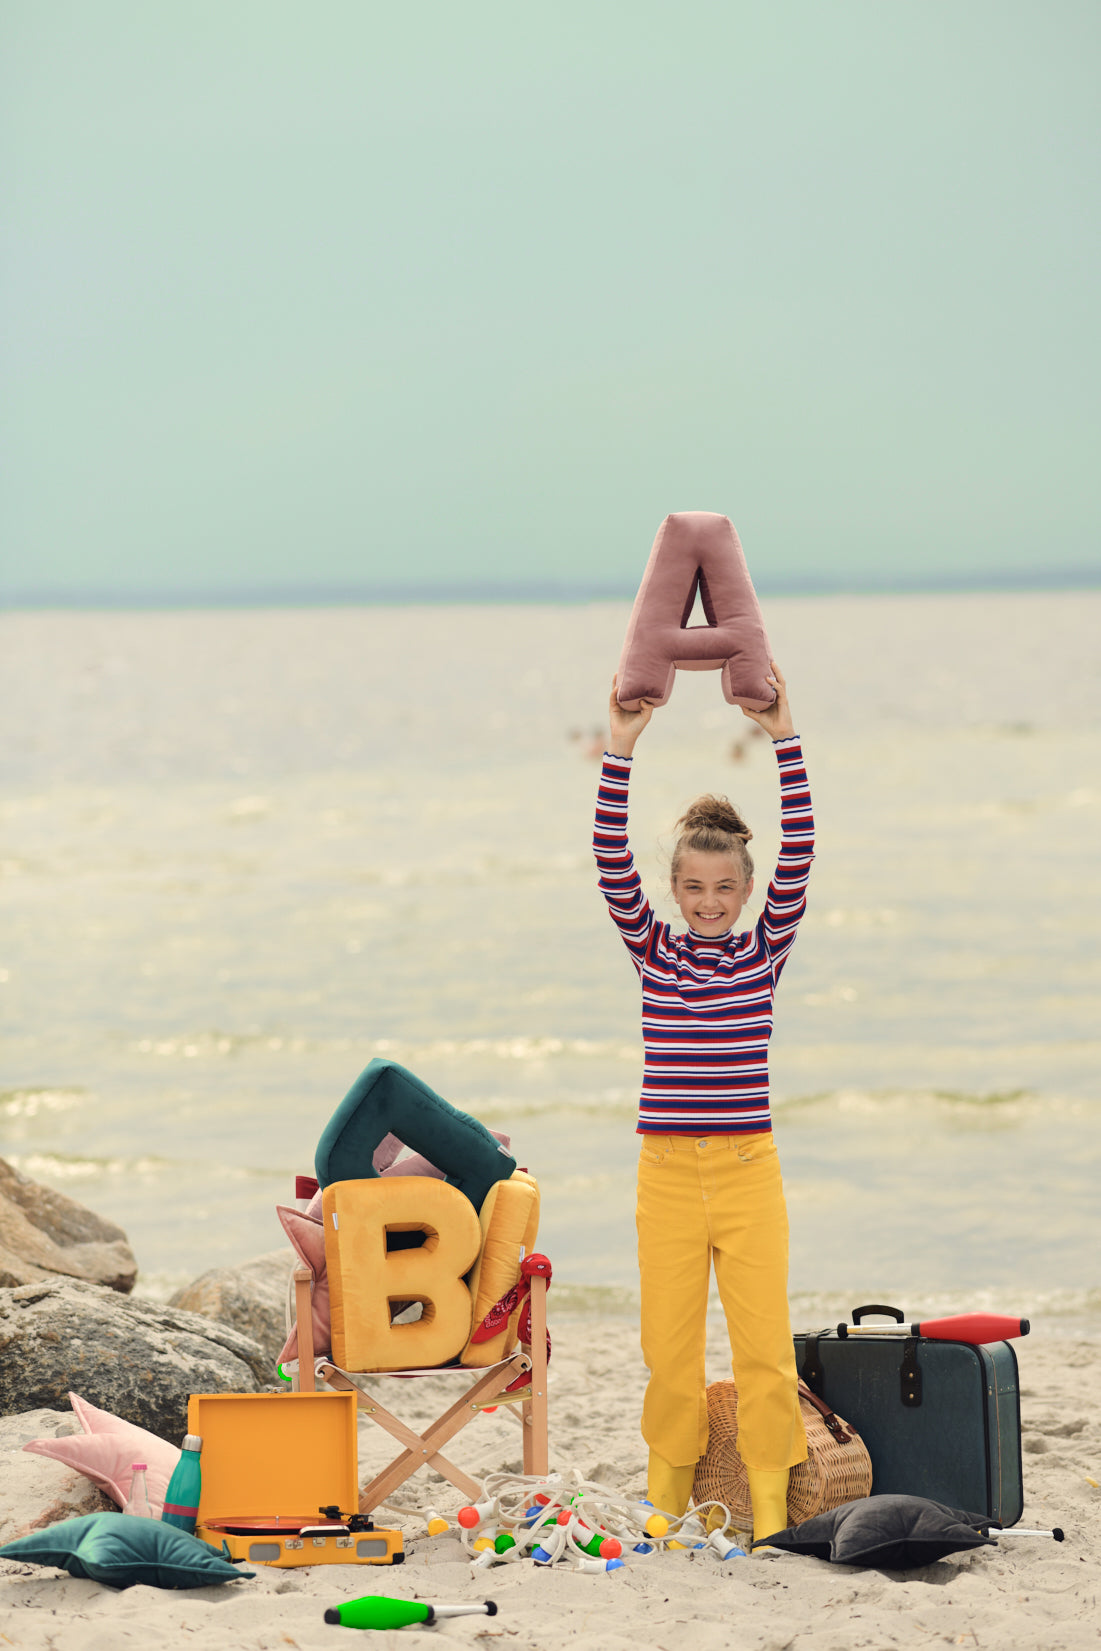 czarująca dziewczynka nad morzem trzymająca poduszkę literkę welurową A w kolorze różowym nad głową